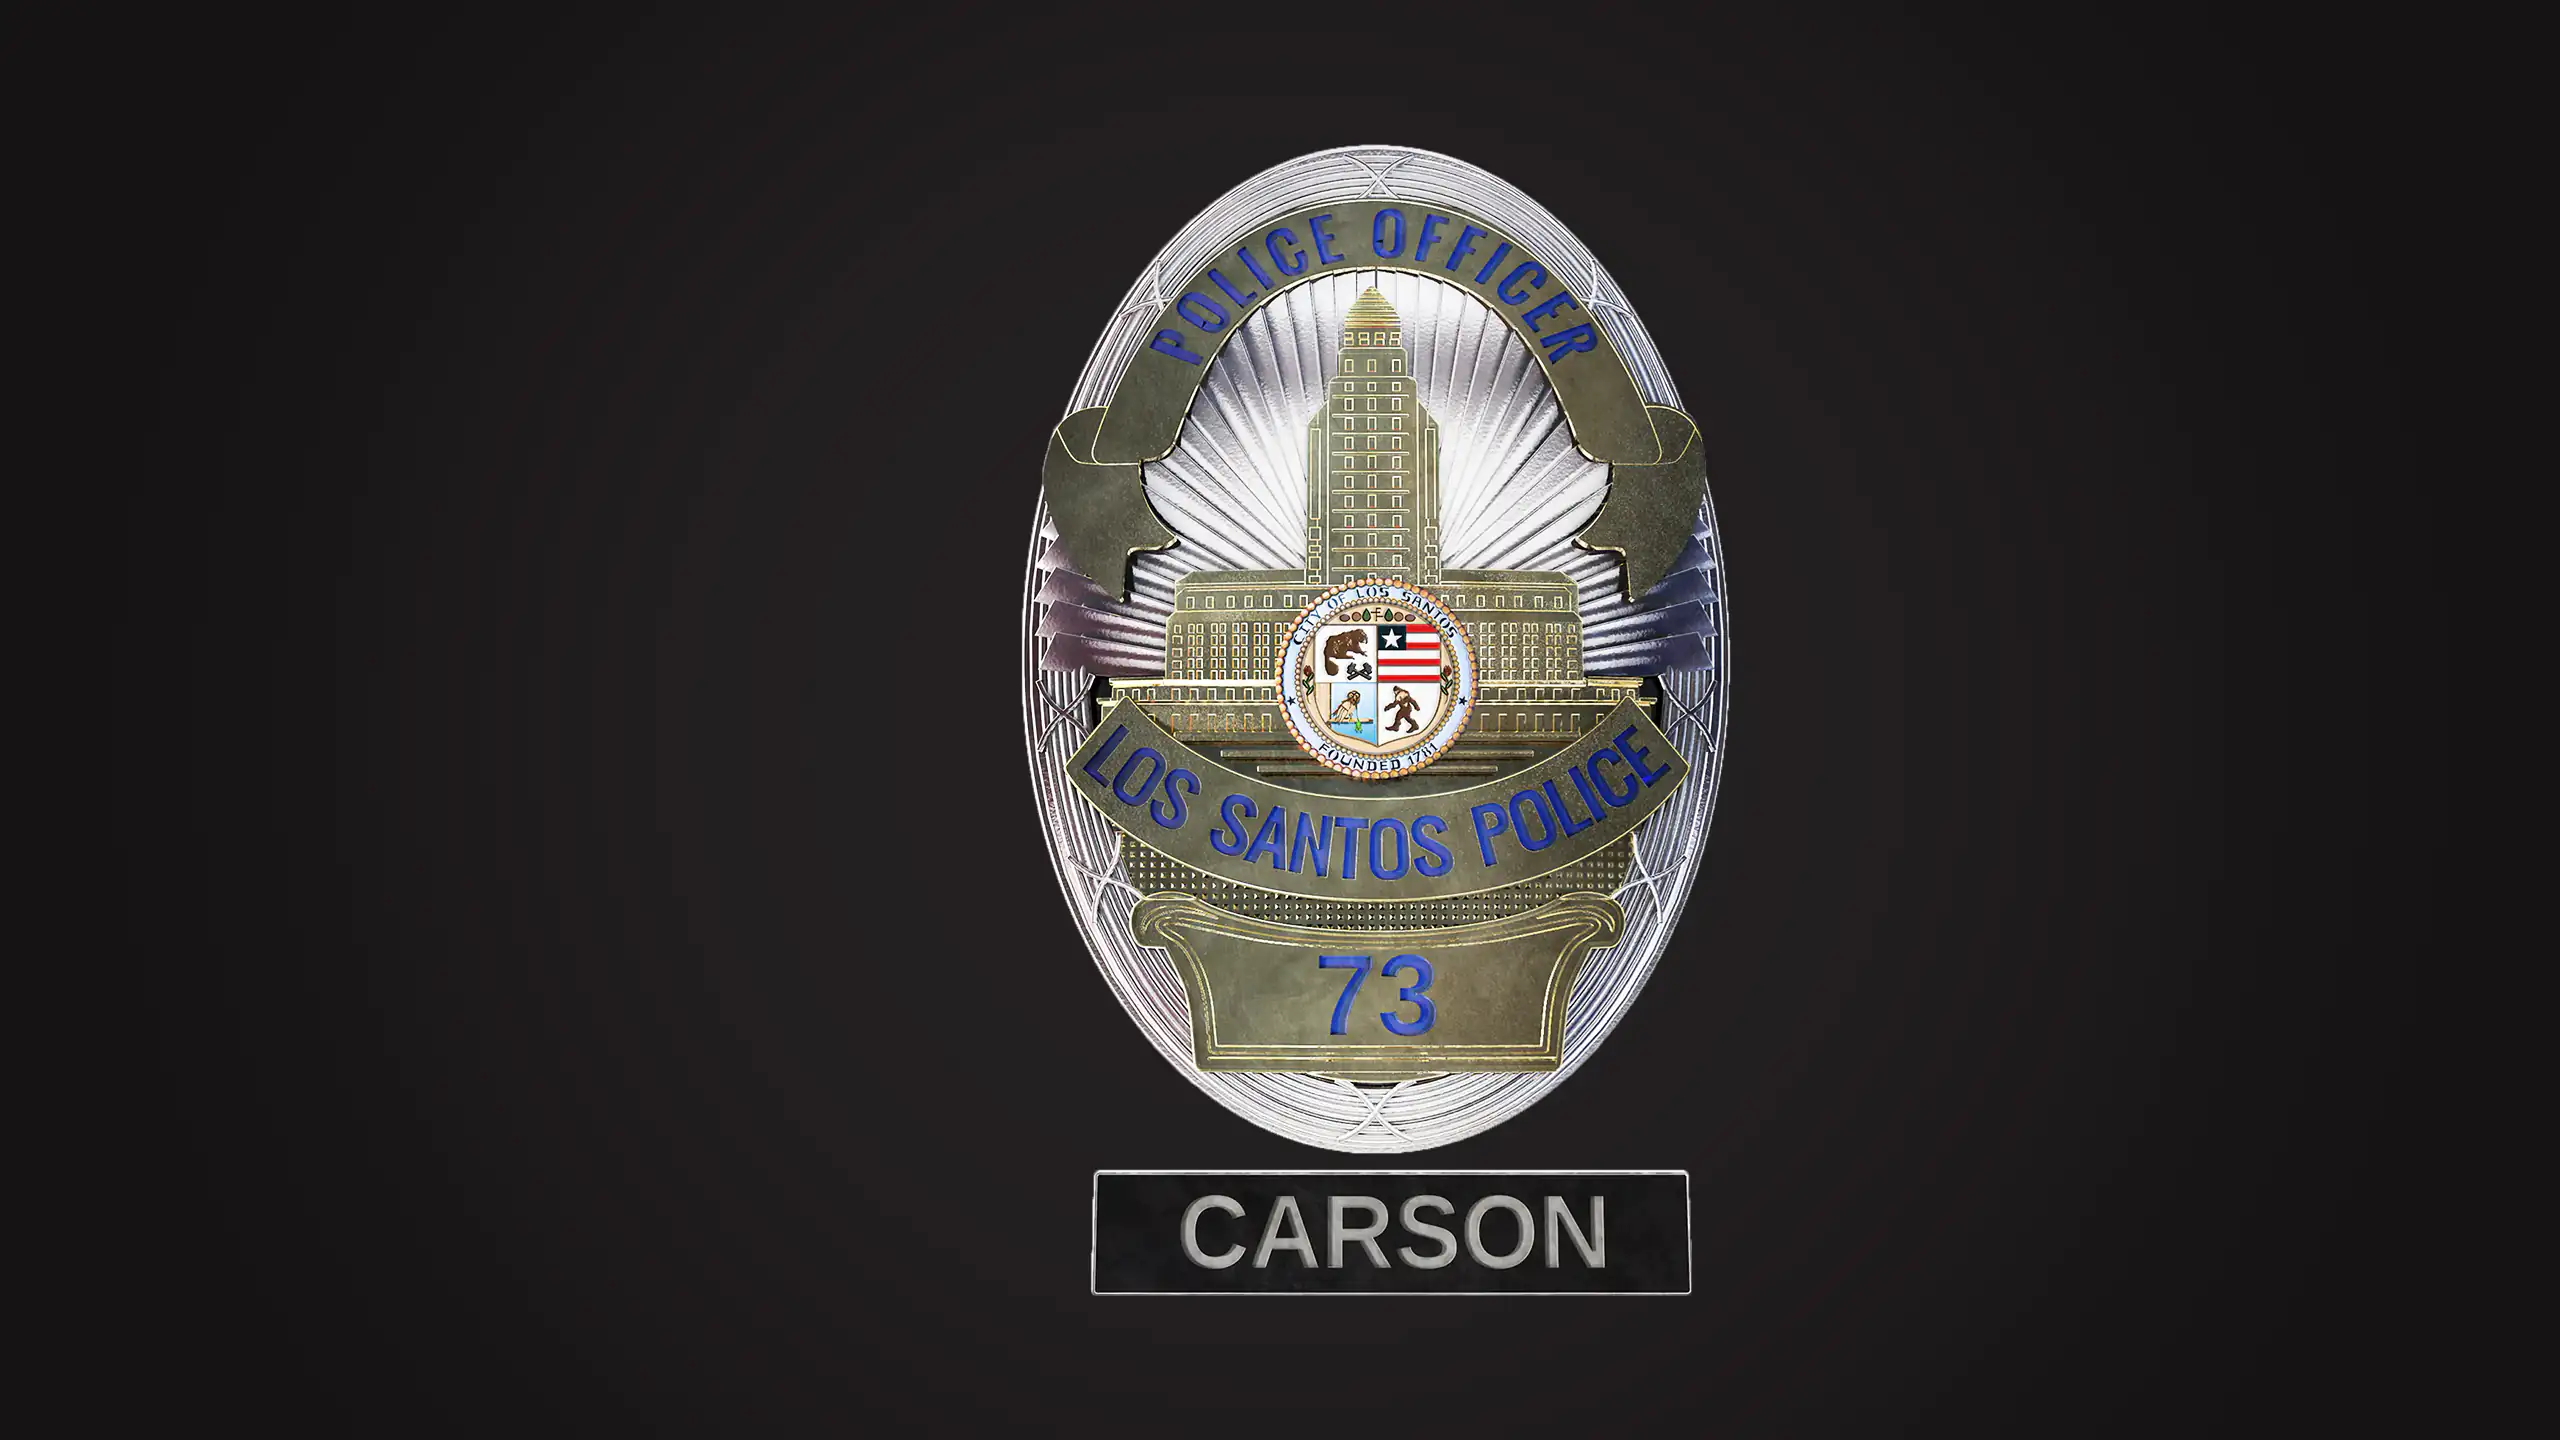 3D-Rendering einer fiktiven Polizeimarke der Los Santos Police mit der Dienstnummer 73 und dem Namen "Carson"